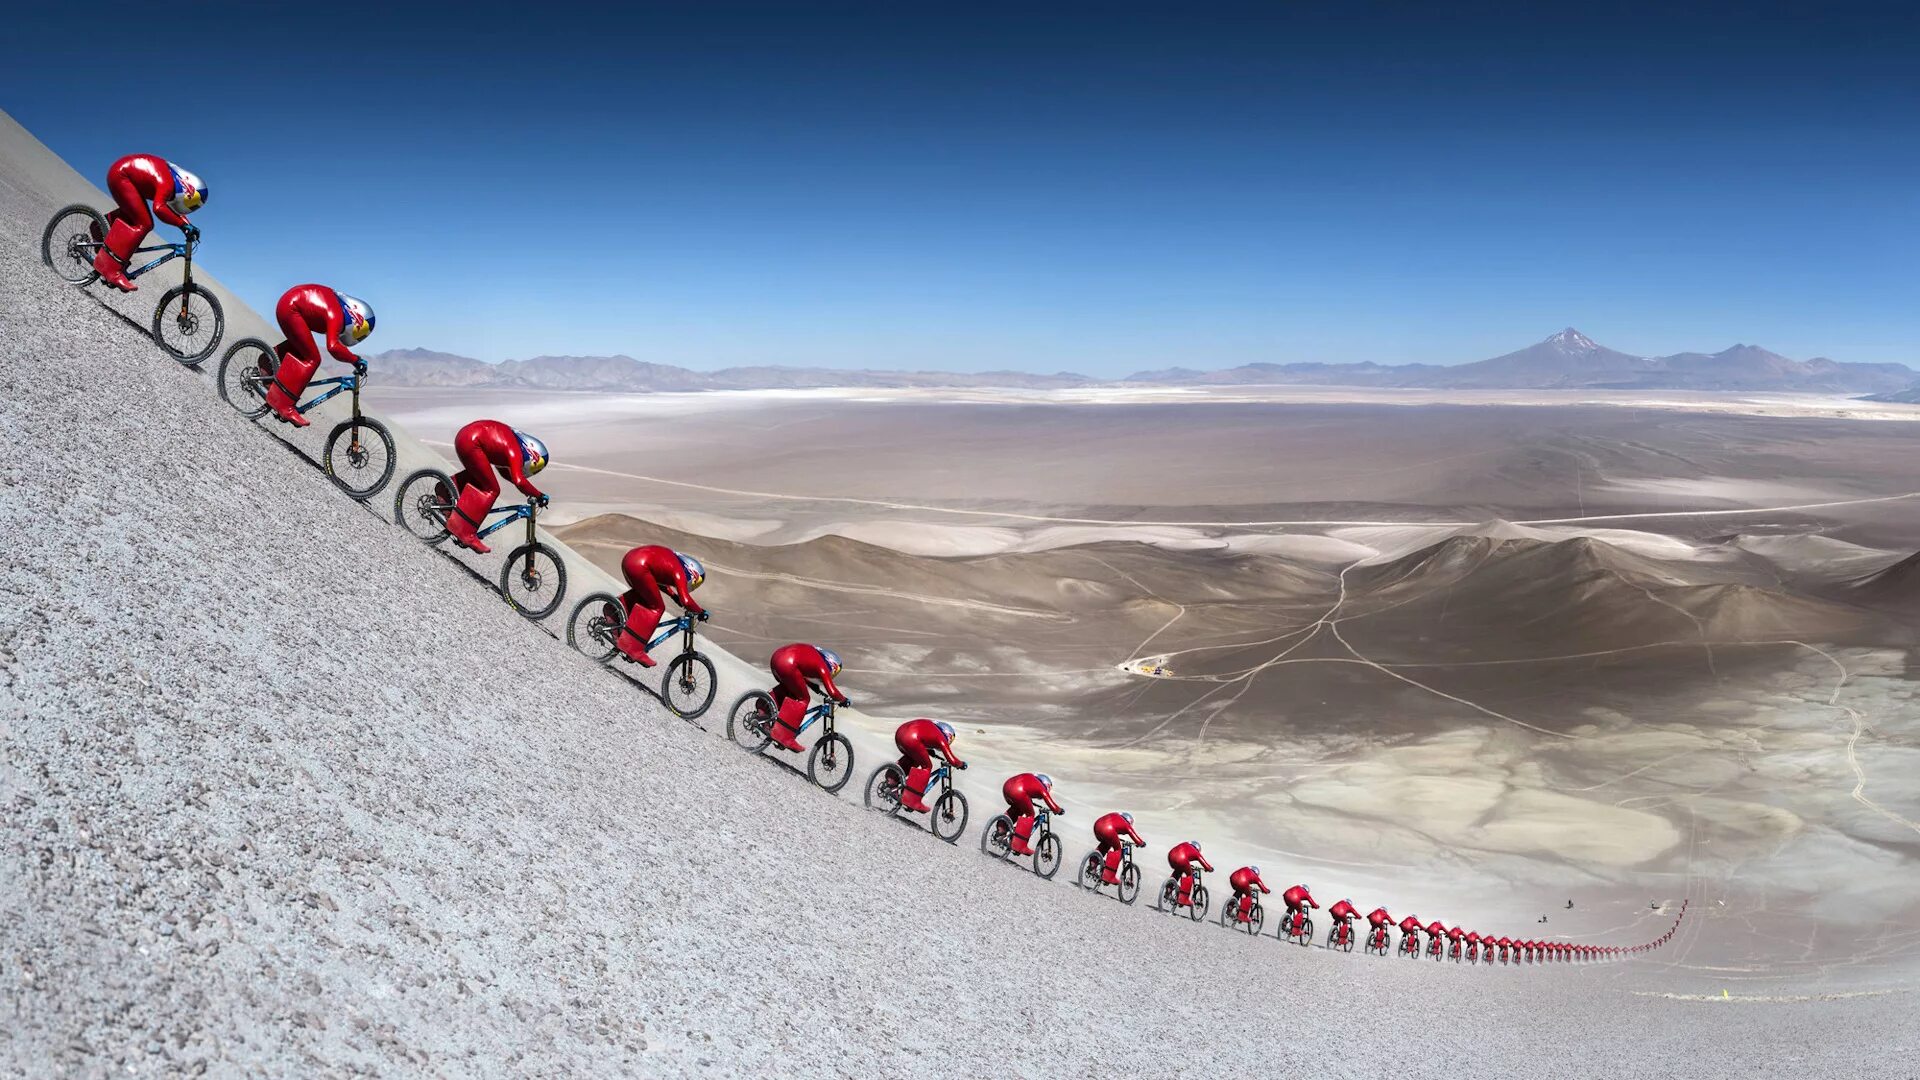 Велосипед скорость на горах. Маркус Штокл. Велосипедист в пустыне. Спуск с горы на велосипеде. Велосипед в горах.